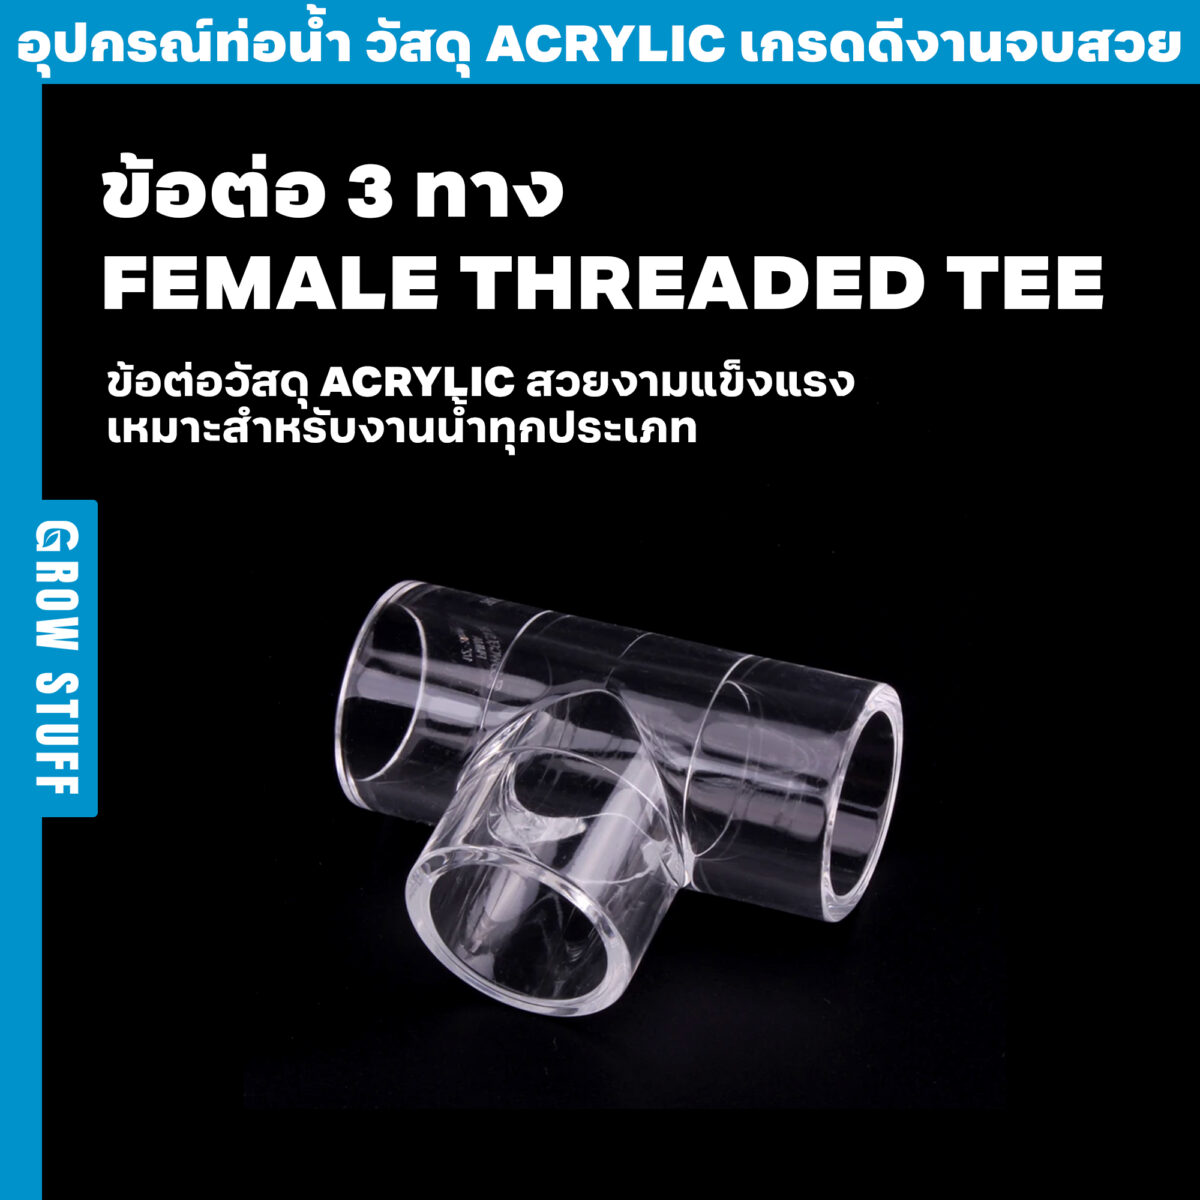 ข้อต่อ 3 ทาง Female threaded Tee